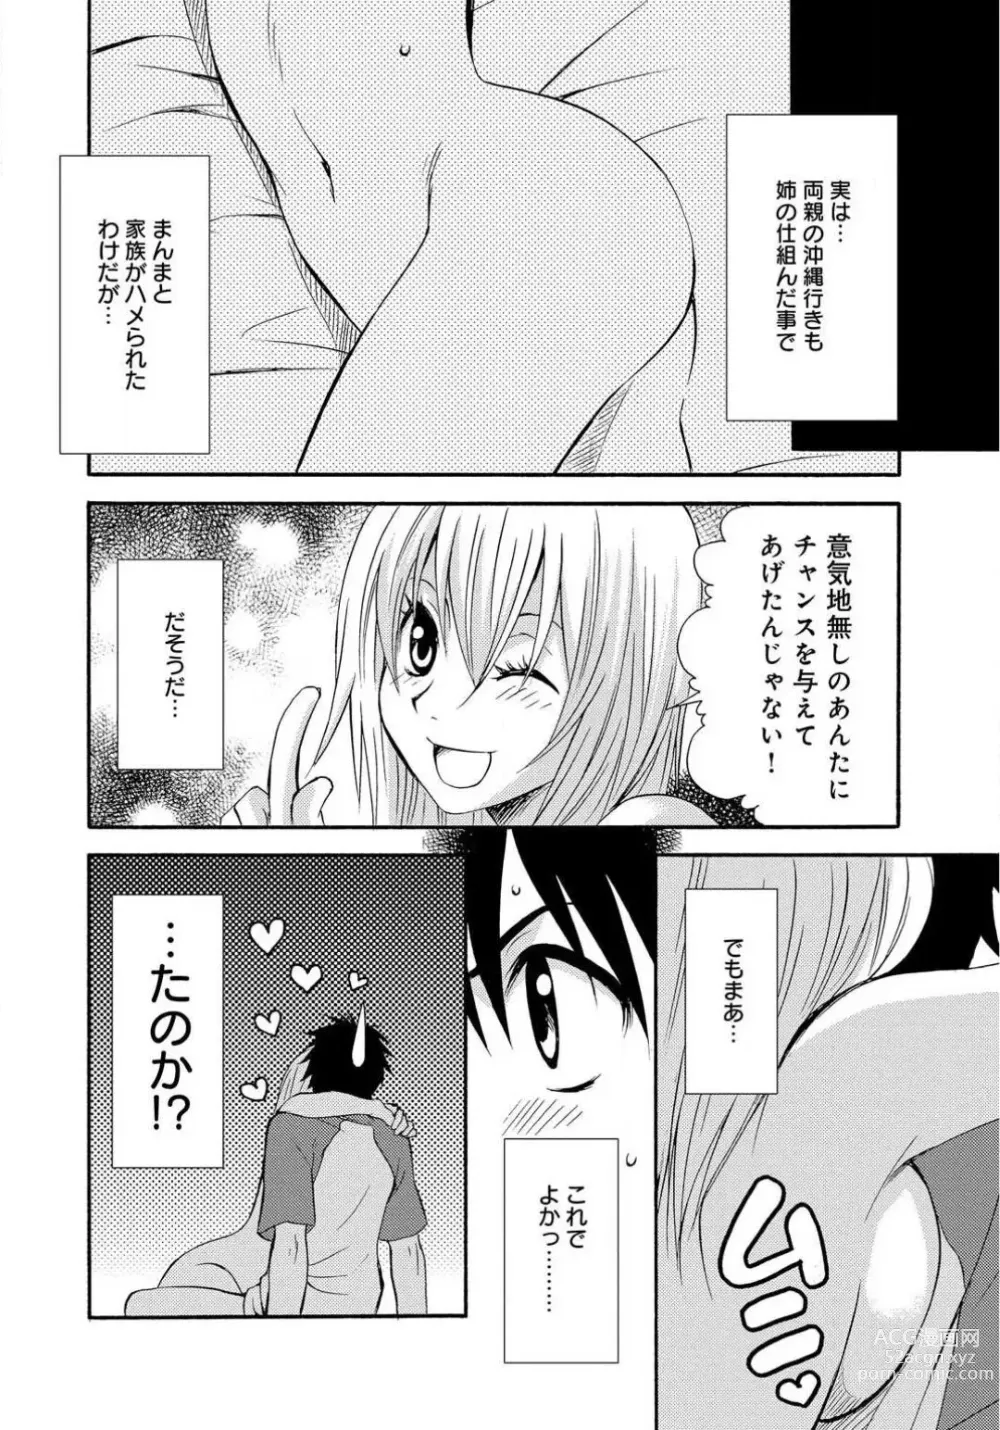 Page 21 of doujinshi Ane no Nikumitsu